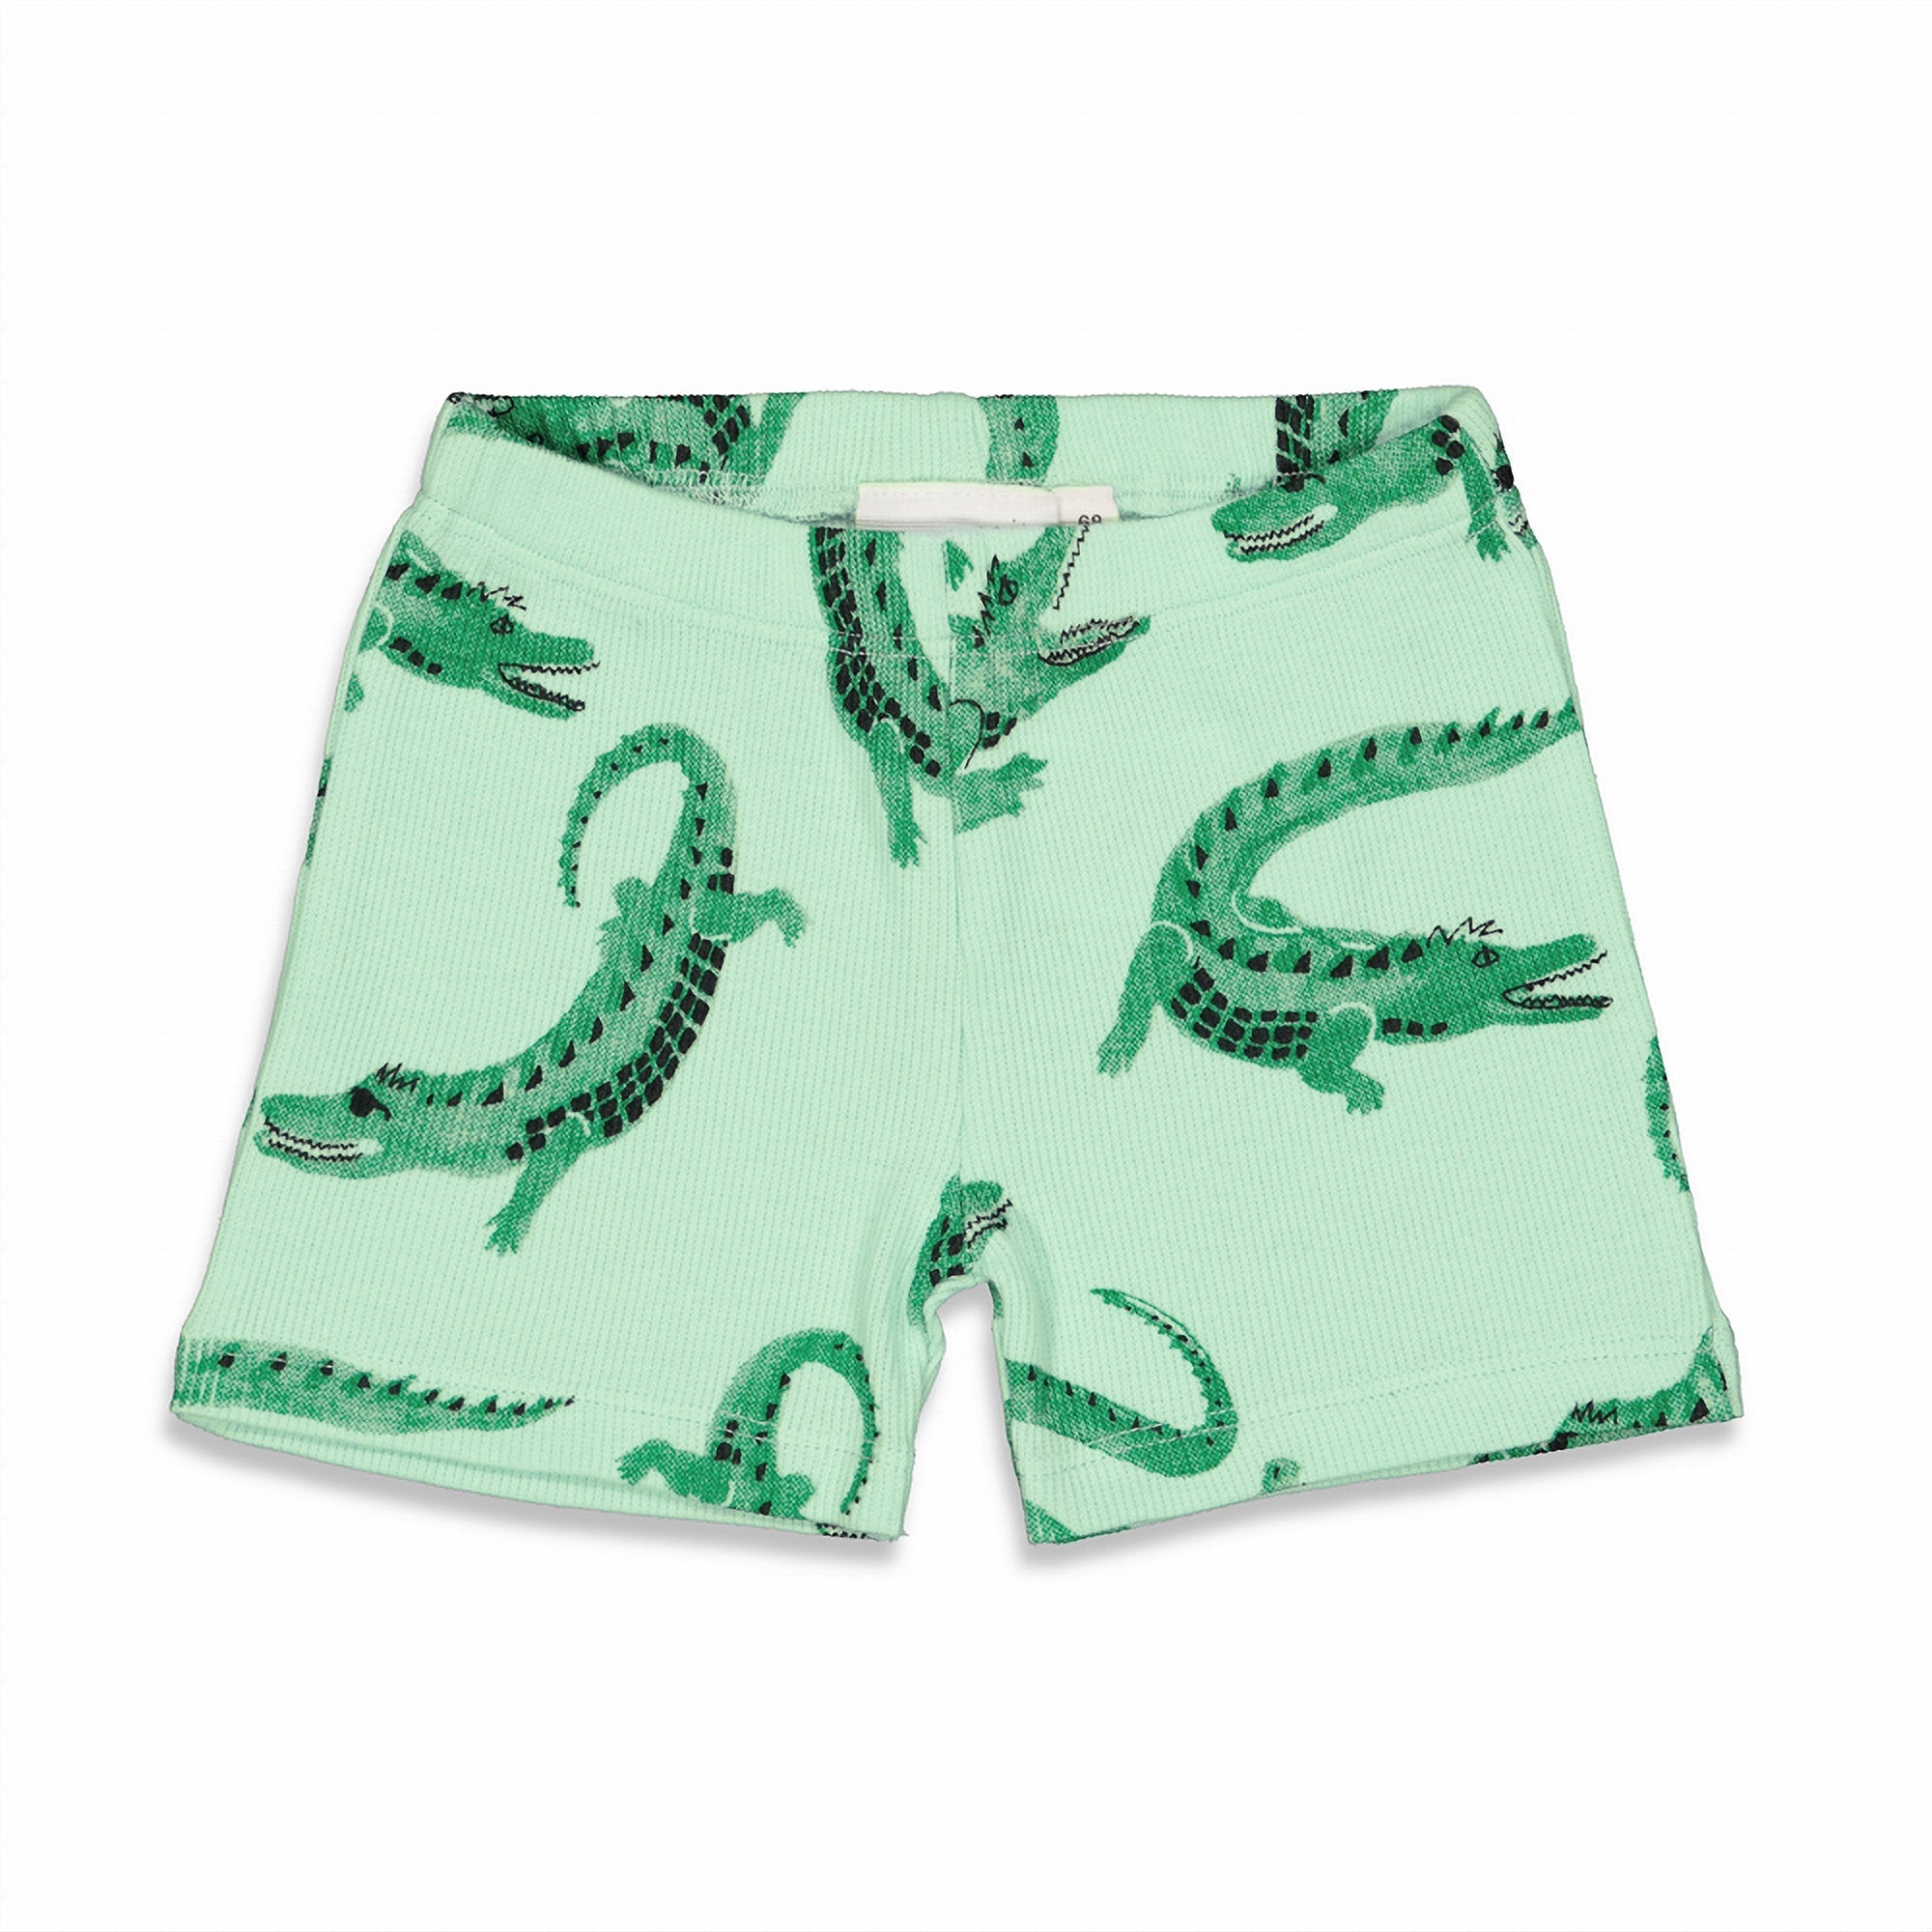 Jongens Chris Croc - Premium Summerwear by FEETJE van Feetje in de kleur Groen in maat 86.